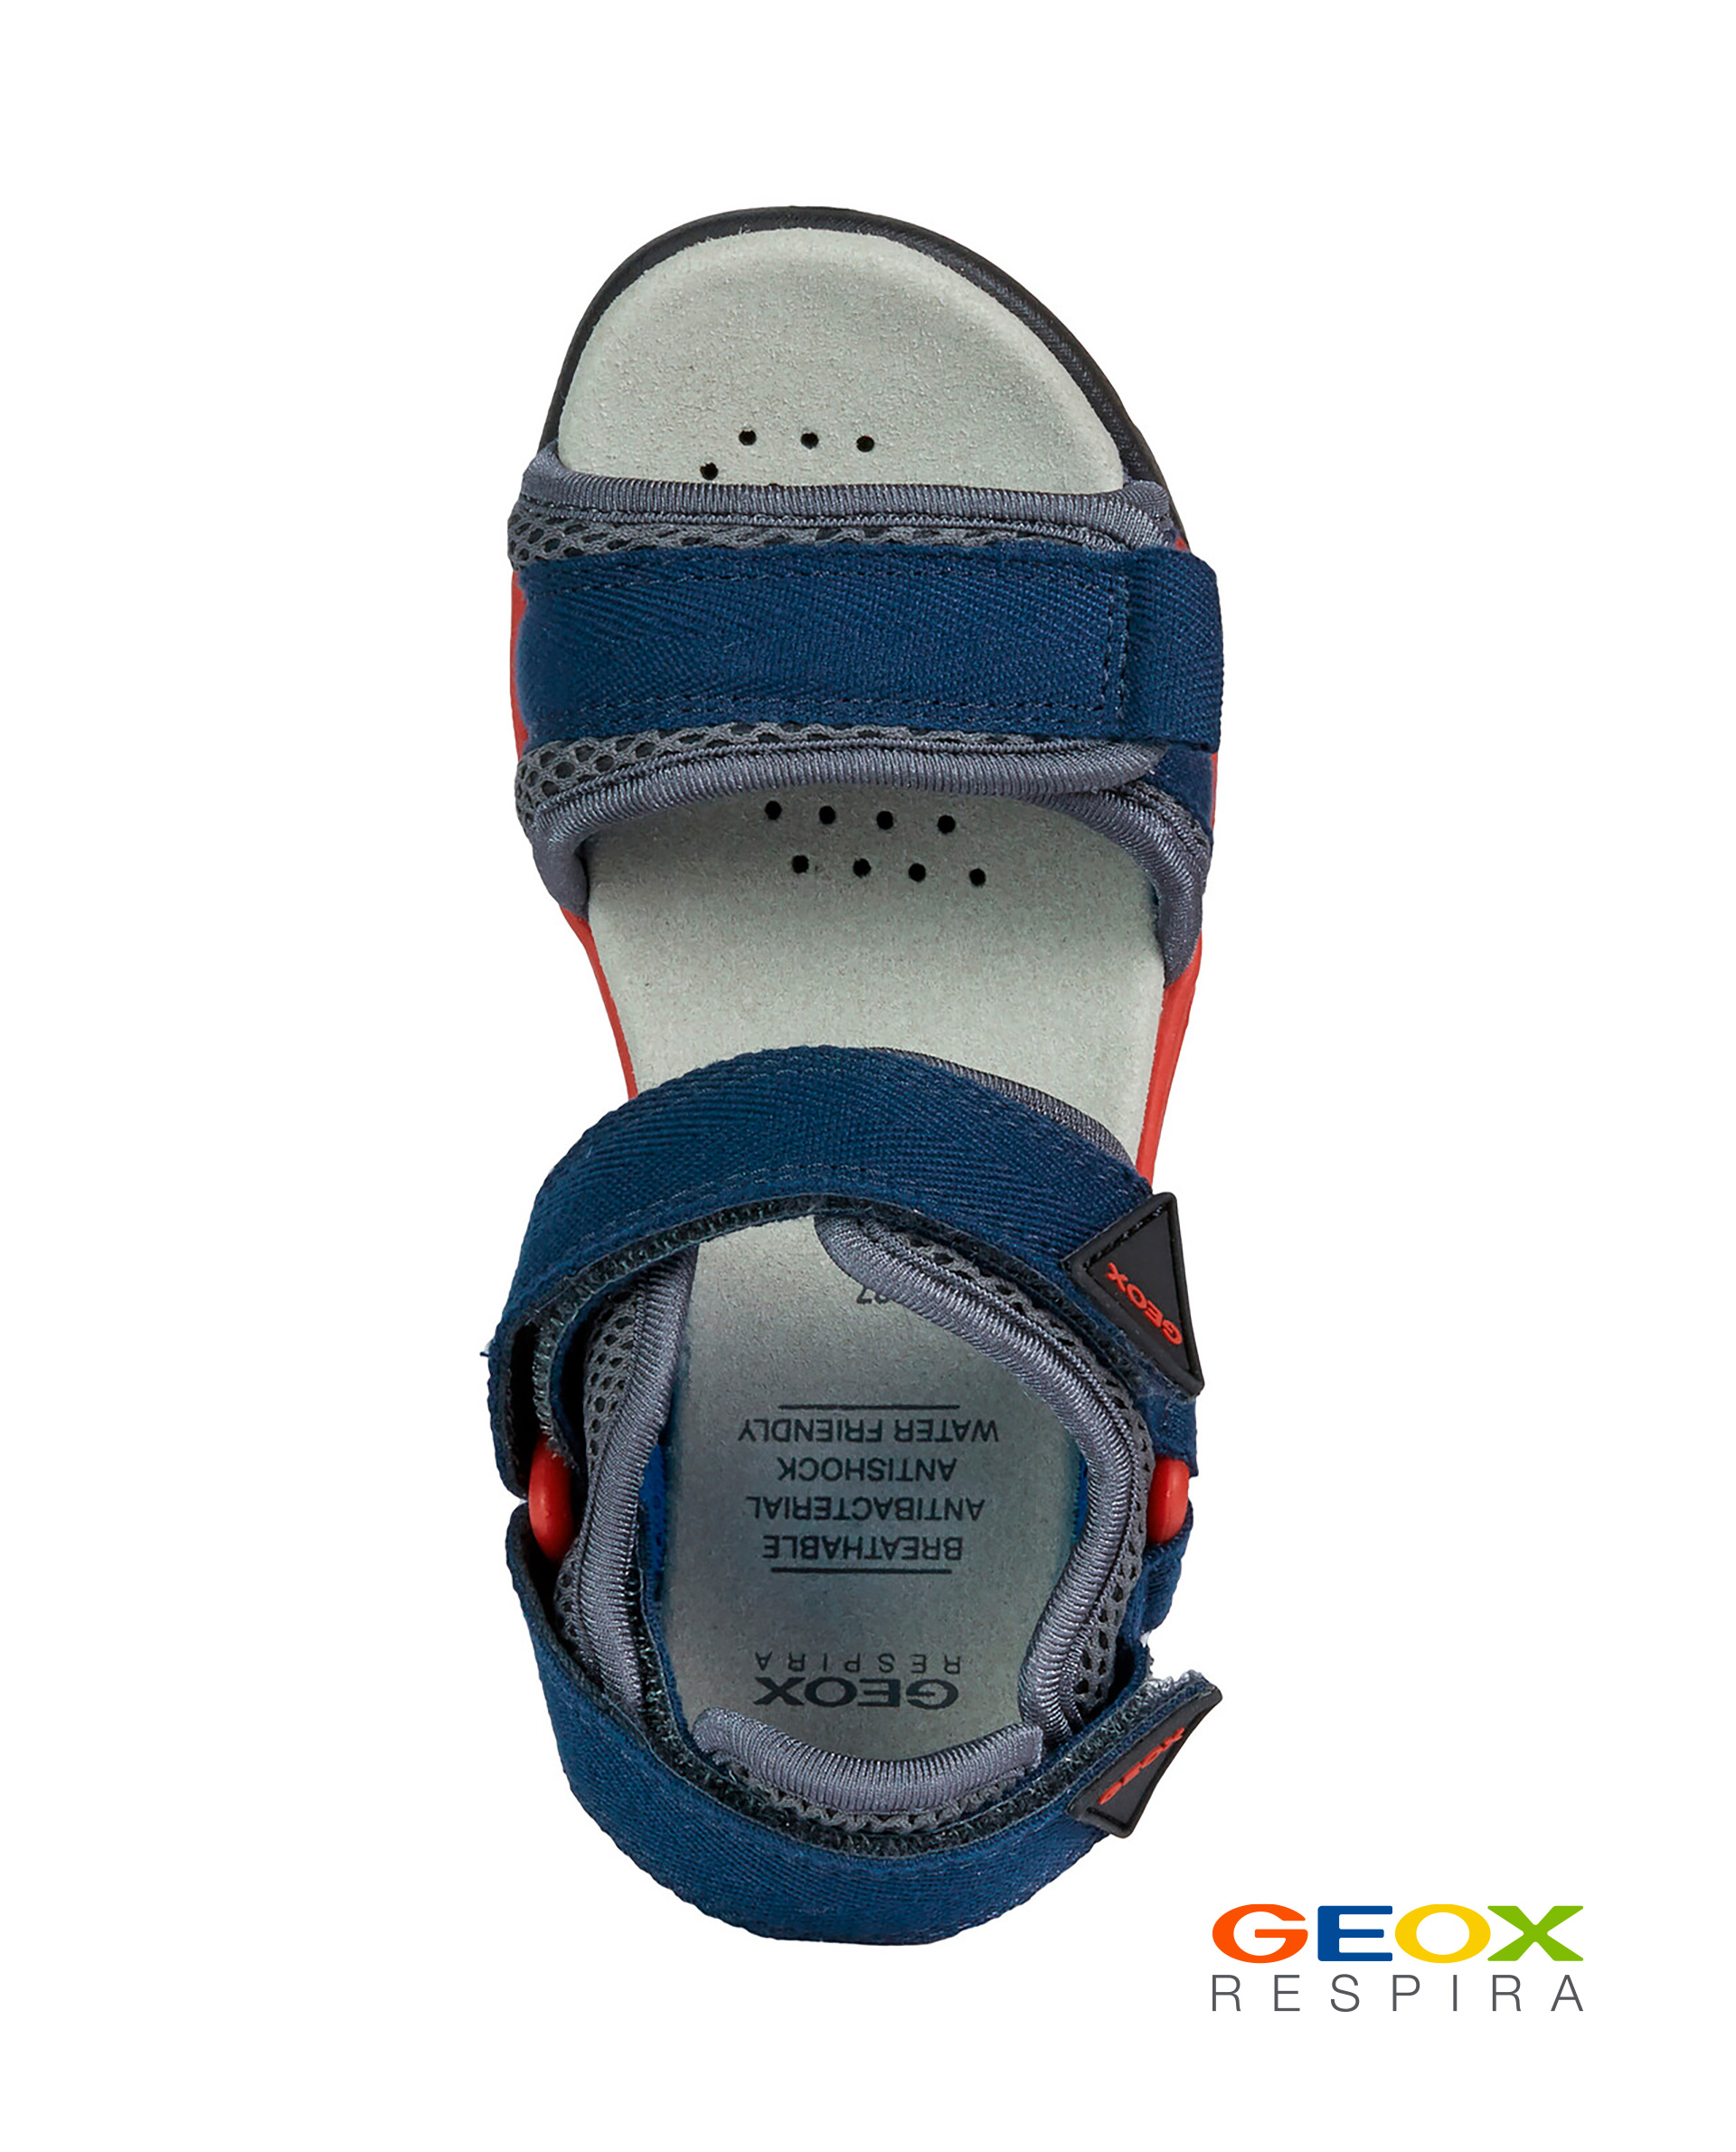 Синие сандалии Geox для мальчика J020RC01411C0735, размер 34, цвет синий - фото 4